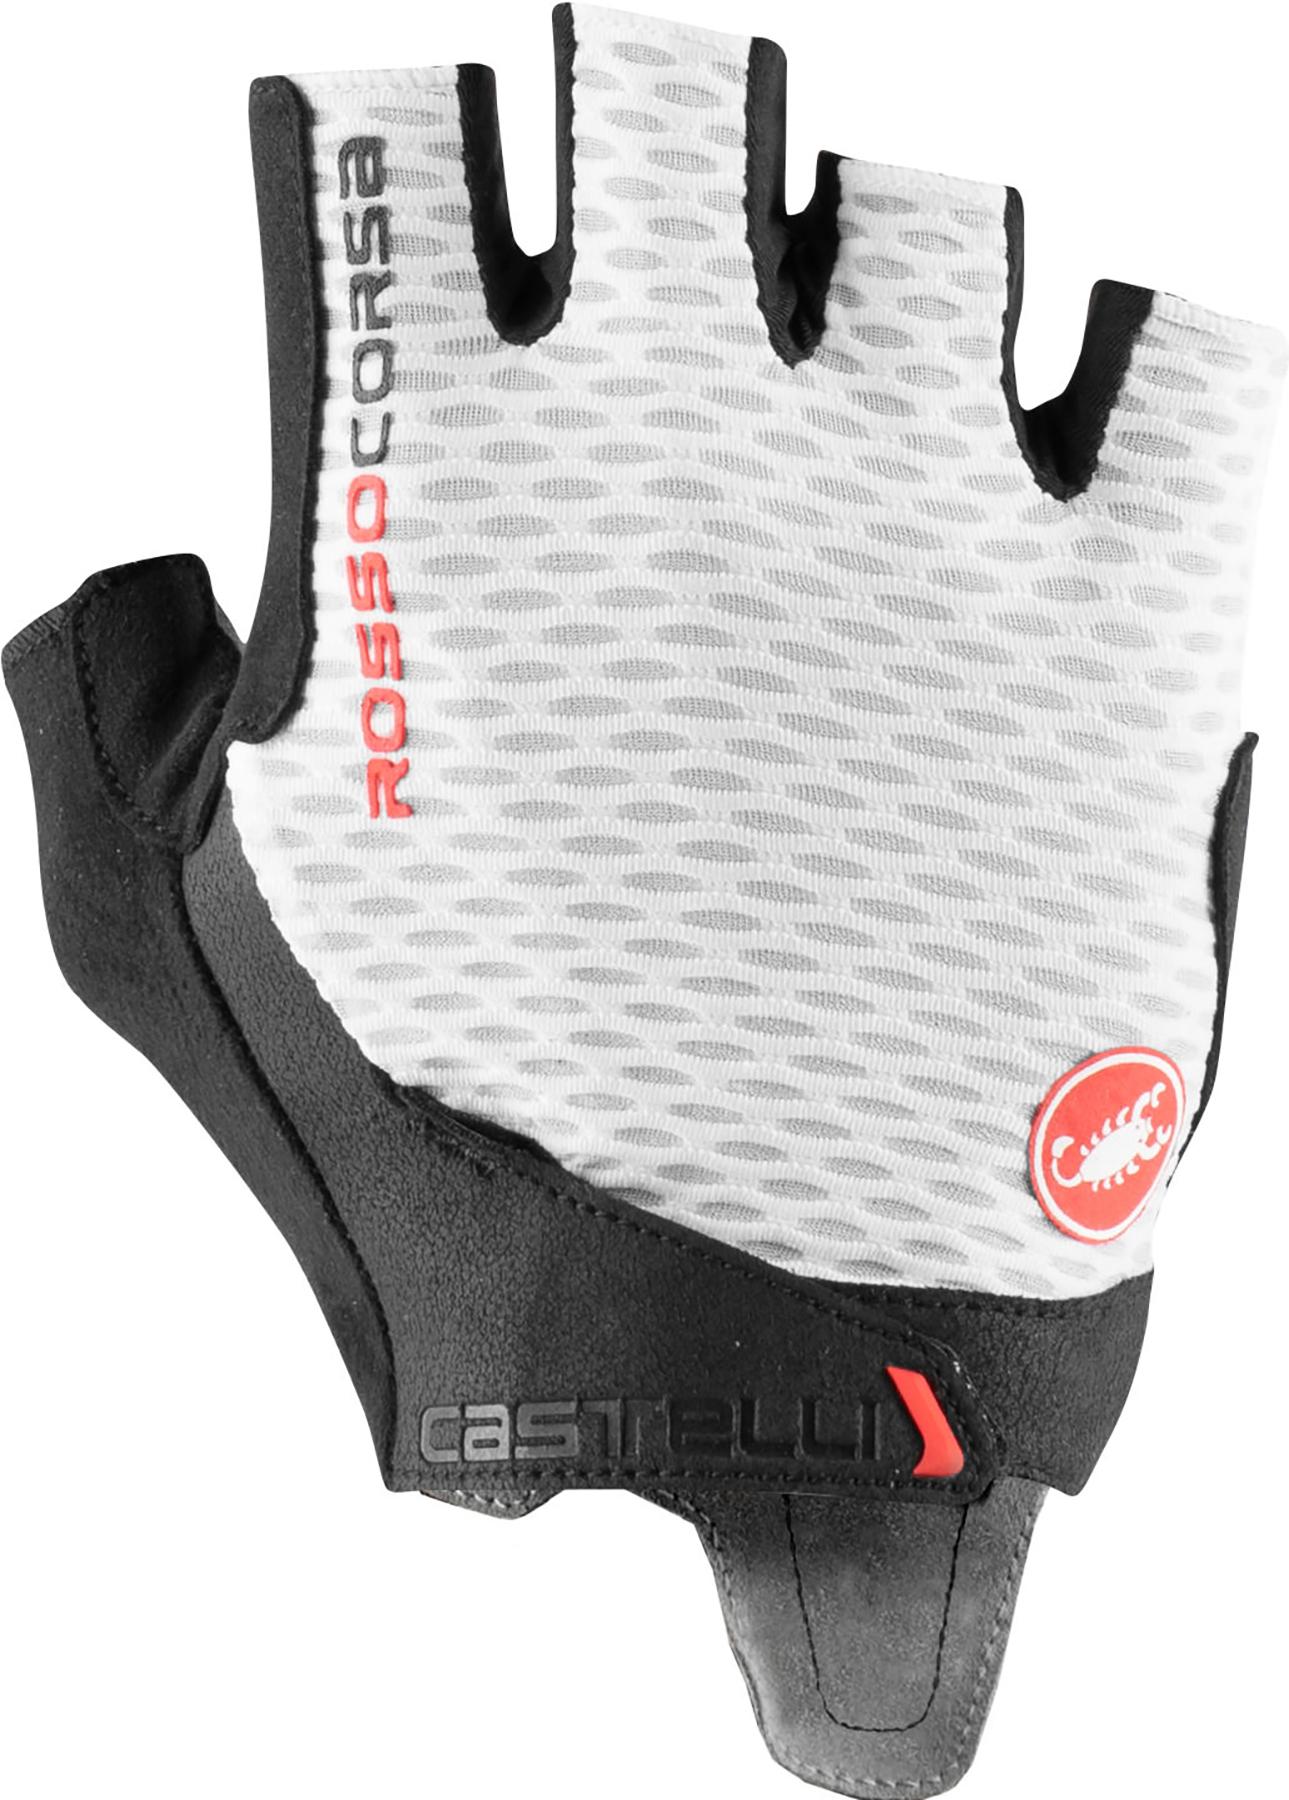 Castelli Rosso Corsa Pro V Gloves  White